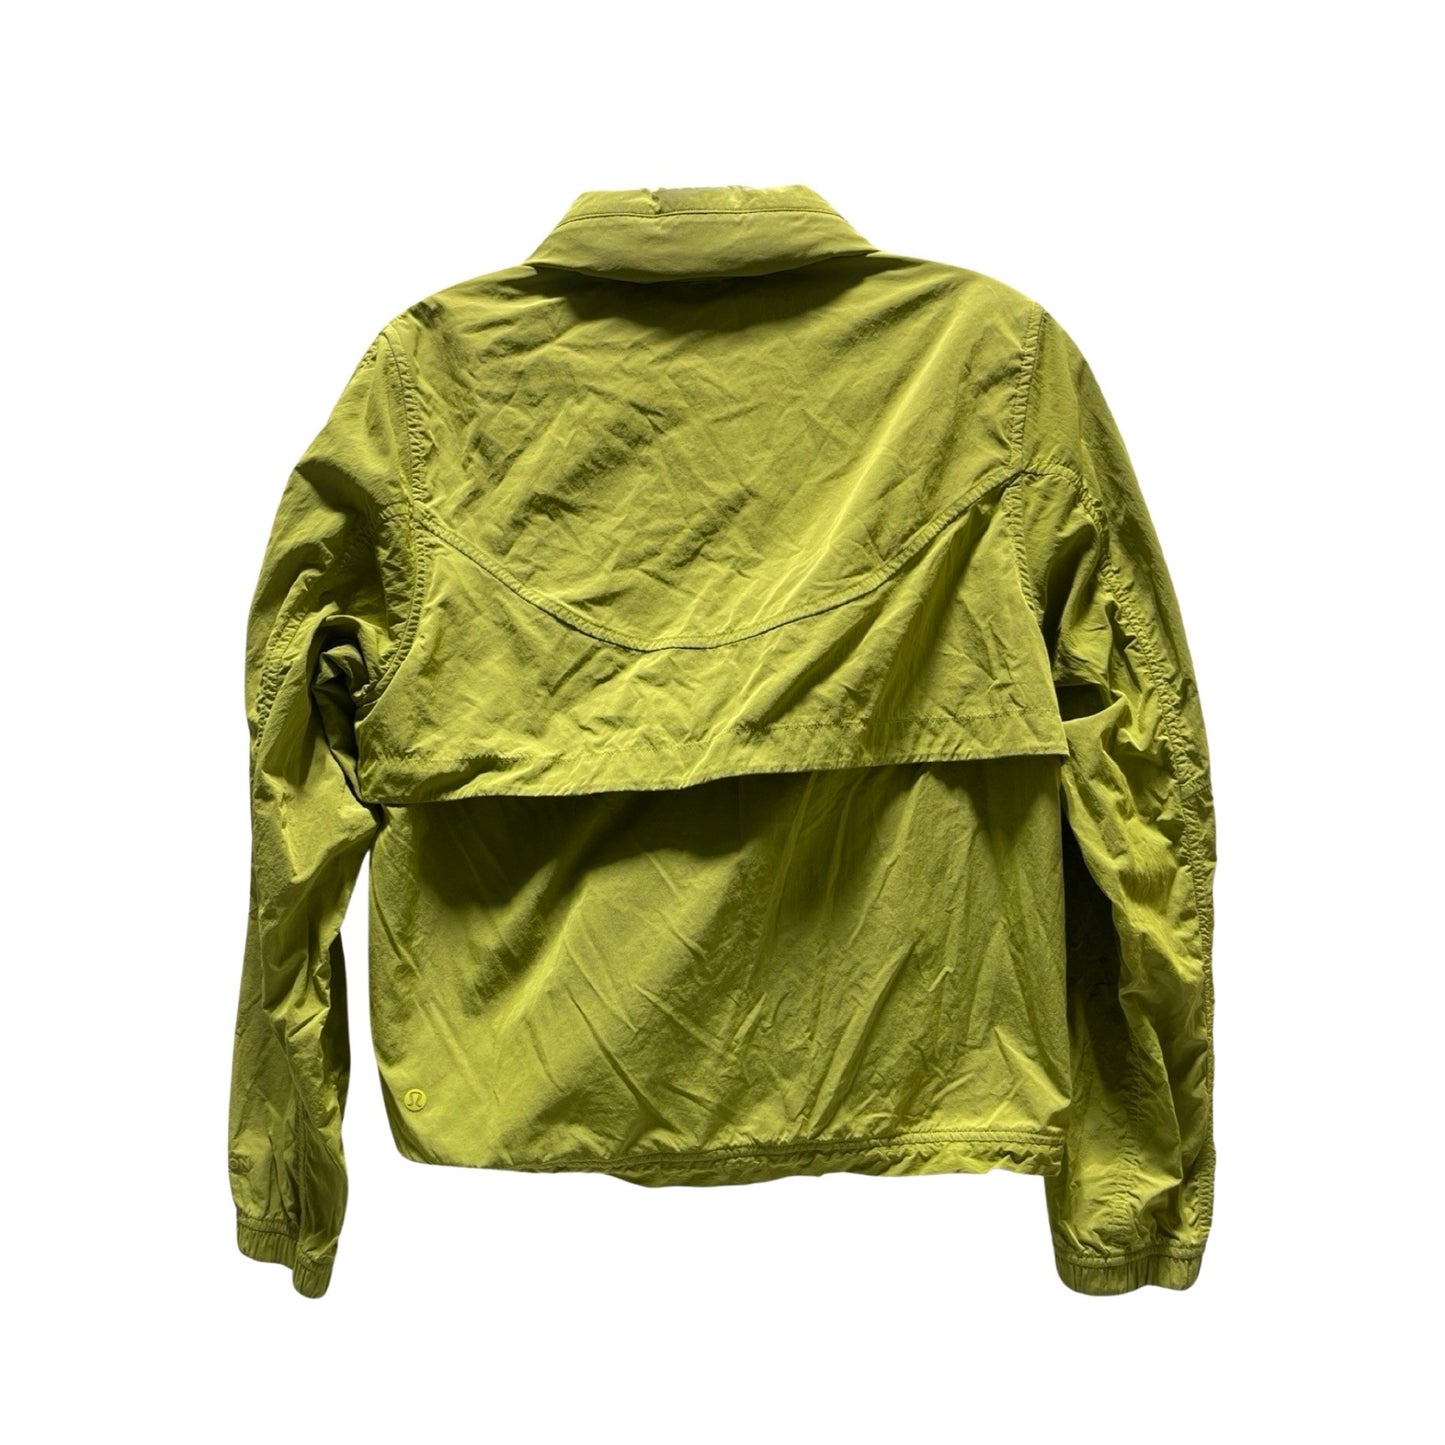 Athletic Jacket By Lululemon  Size: 4